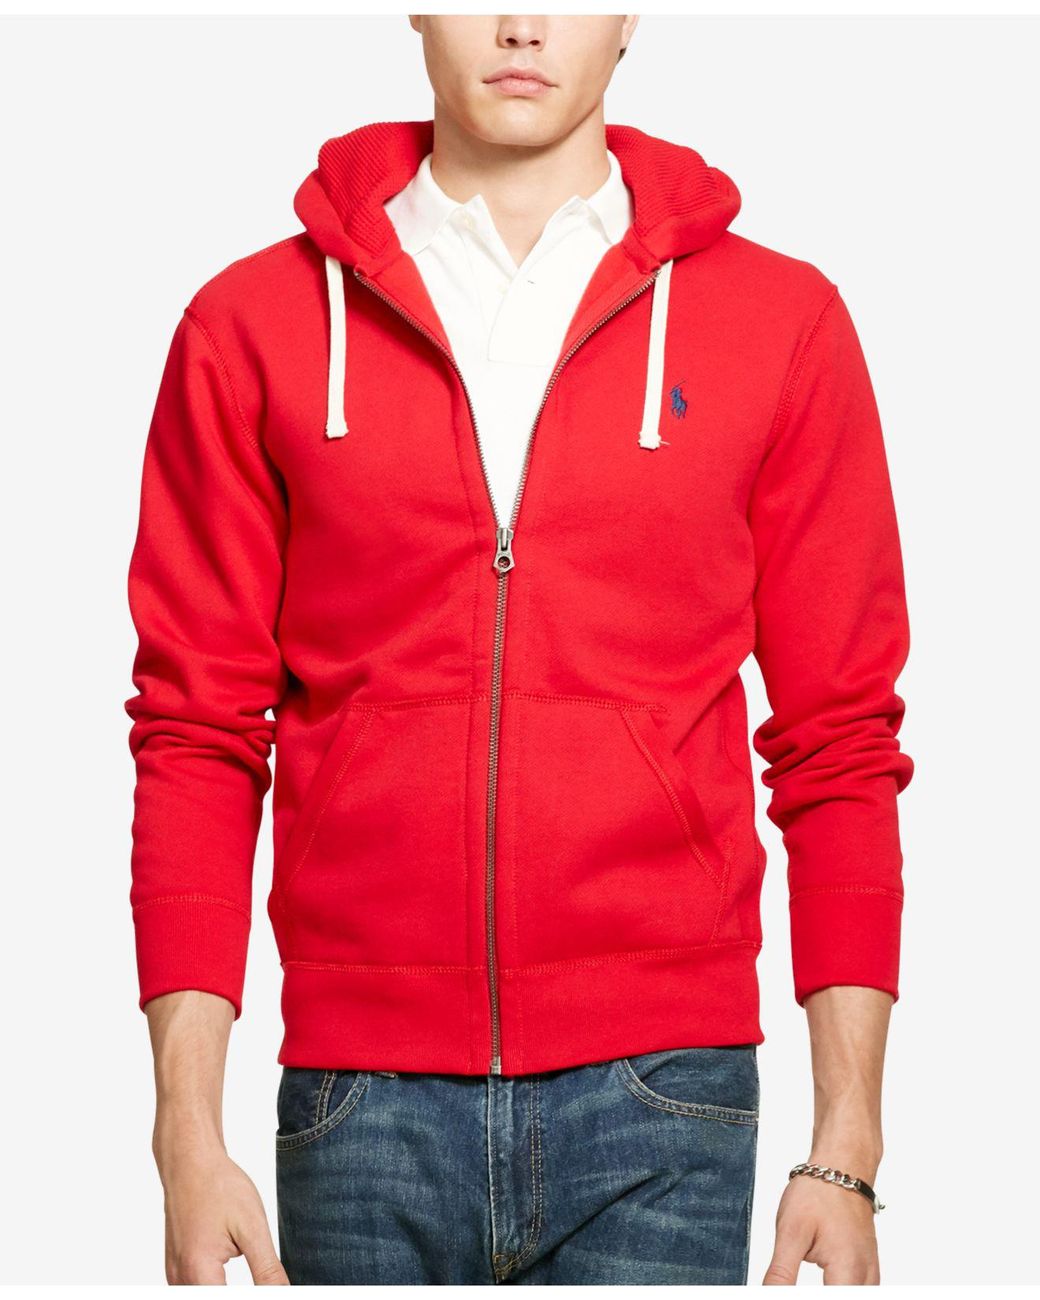 Lyst - Polo Ralph Lauren Hoodie, Full Zip Hooded Fleece in Red for Men